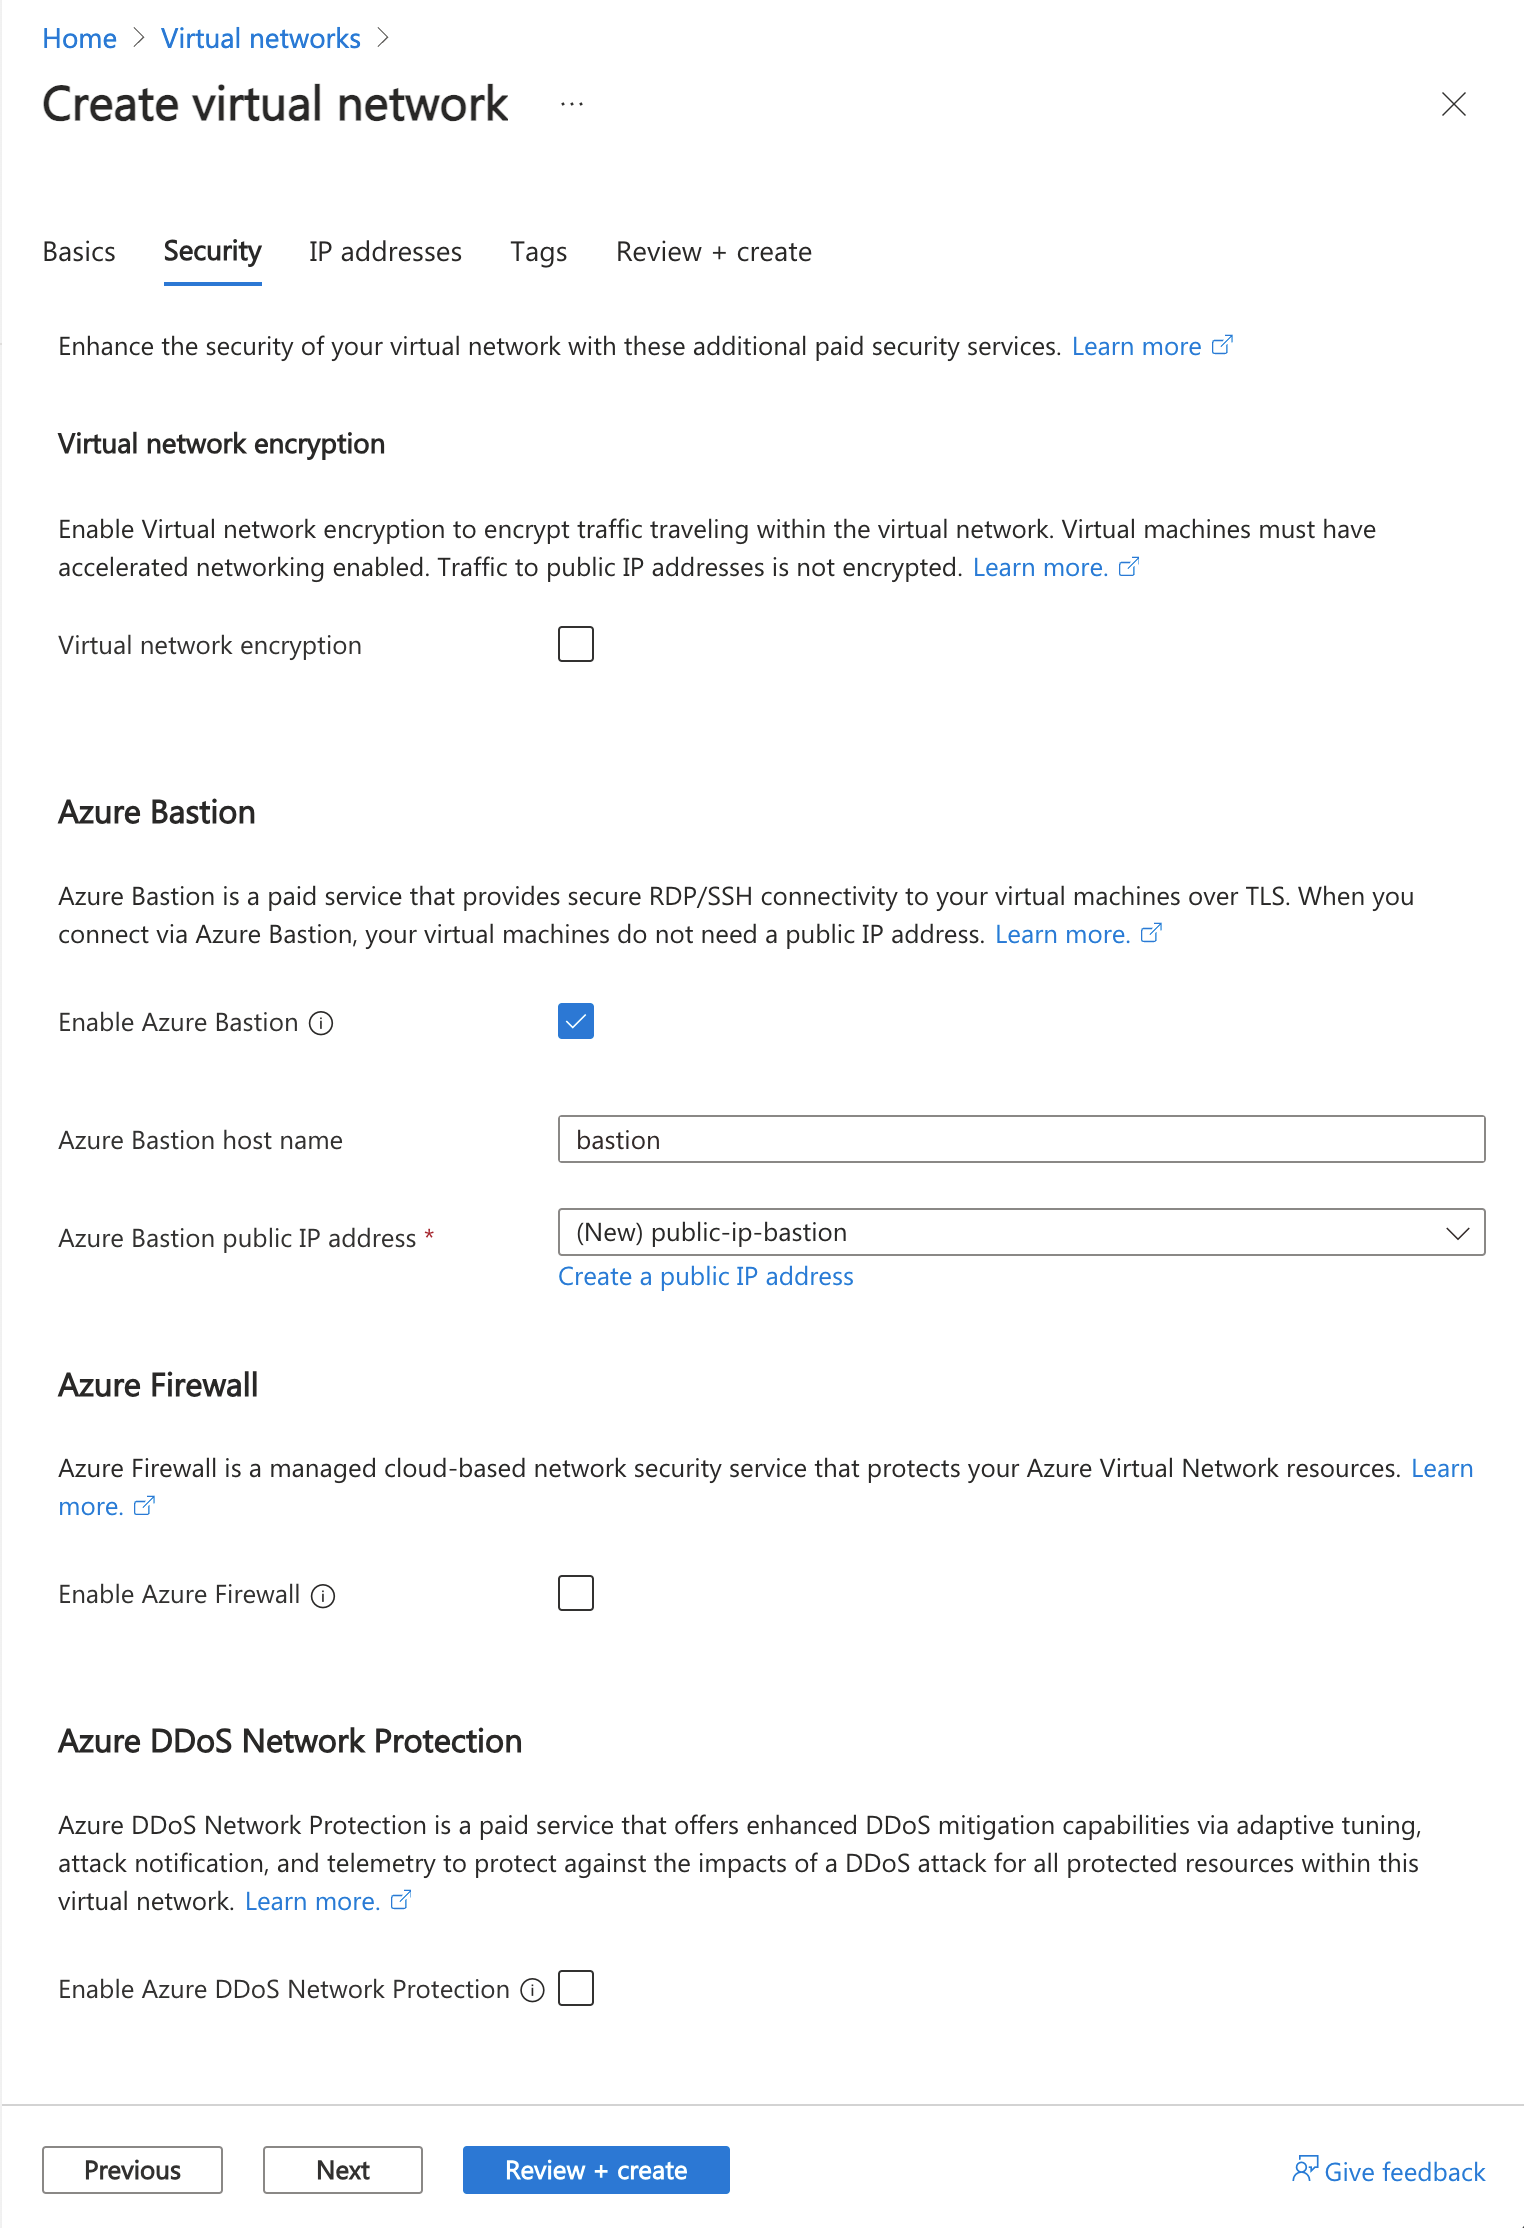 Captura de pantalla de las opciones para habilitar un host de Azure Bastion como parte de la creación de una red virtual en Azure Portal.